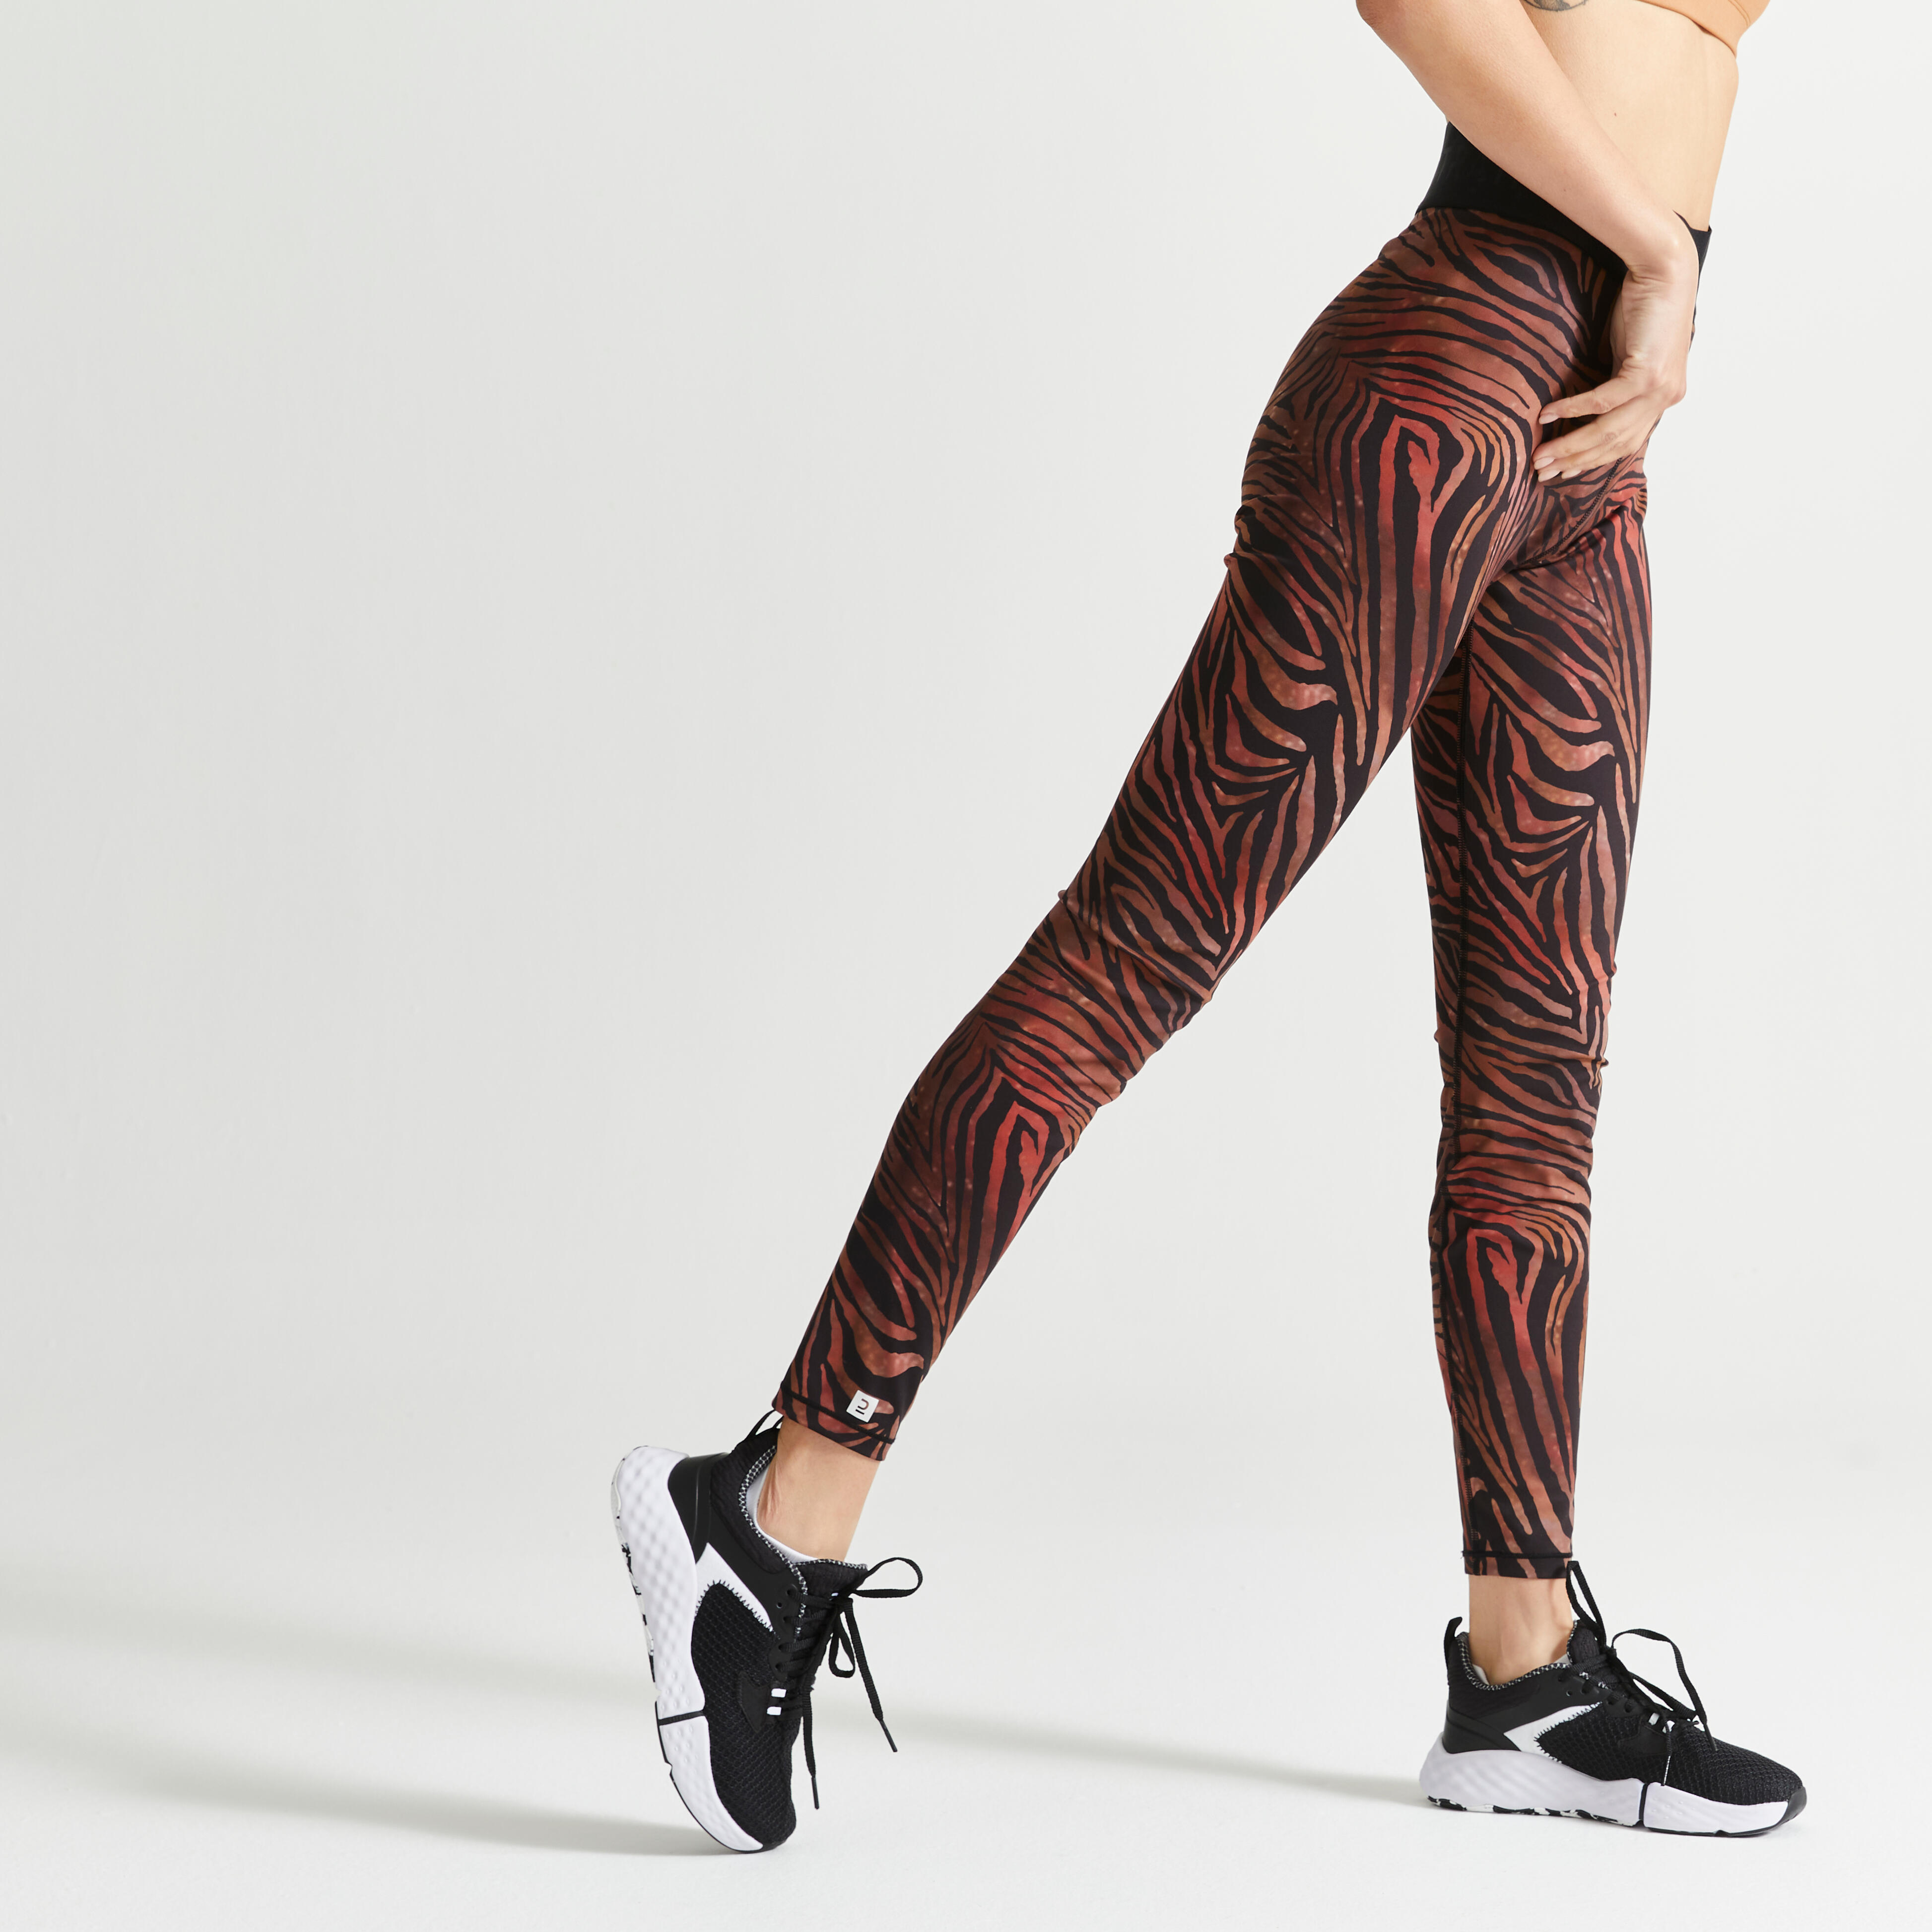 Legging 7/8 Femme Fitness Pantalon de Sport Yoga Respirant élastique Légers Doux 